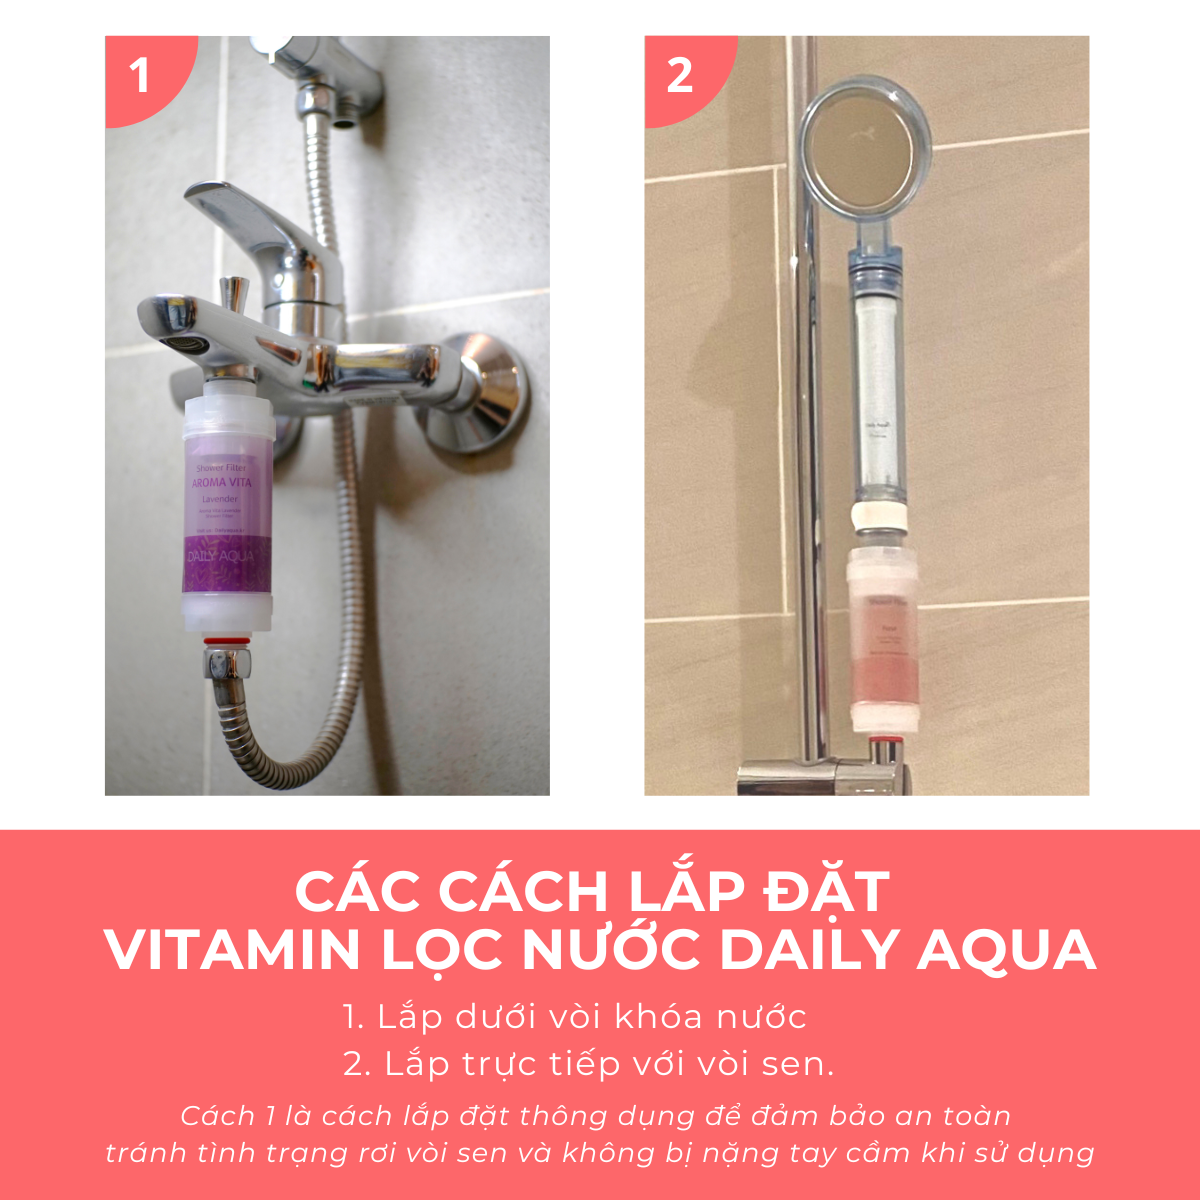 Lõi Lọc Vòi Sen Vitamin Daily Aqua, Loại Bỏ Clo, Tạo Mùi Thơm - 4 Mùi Hương